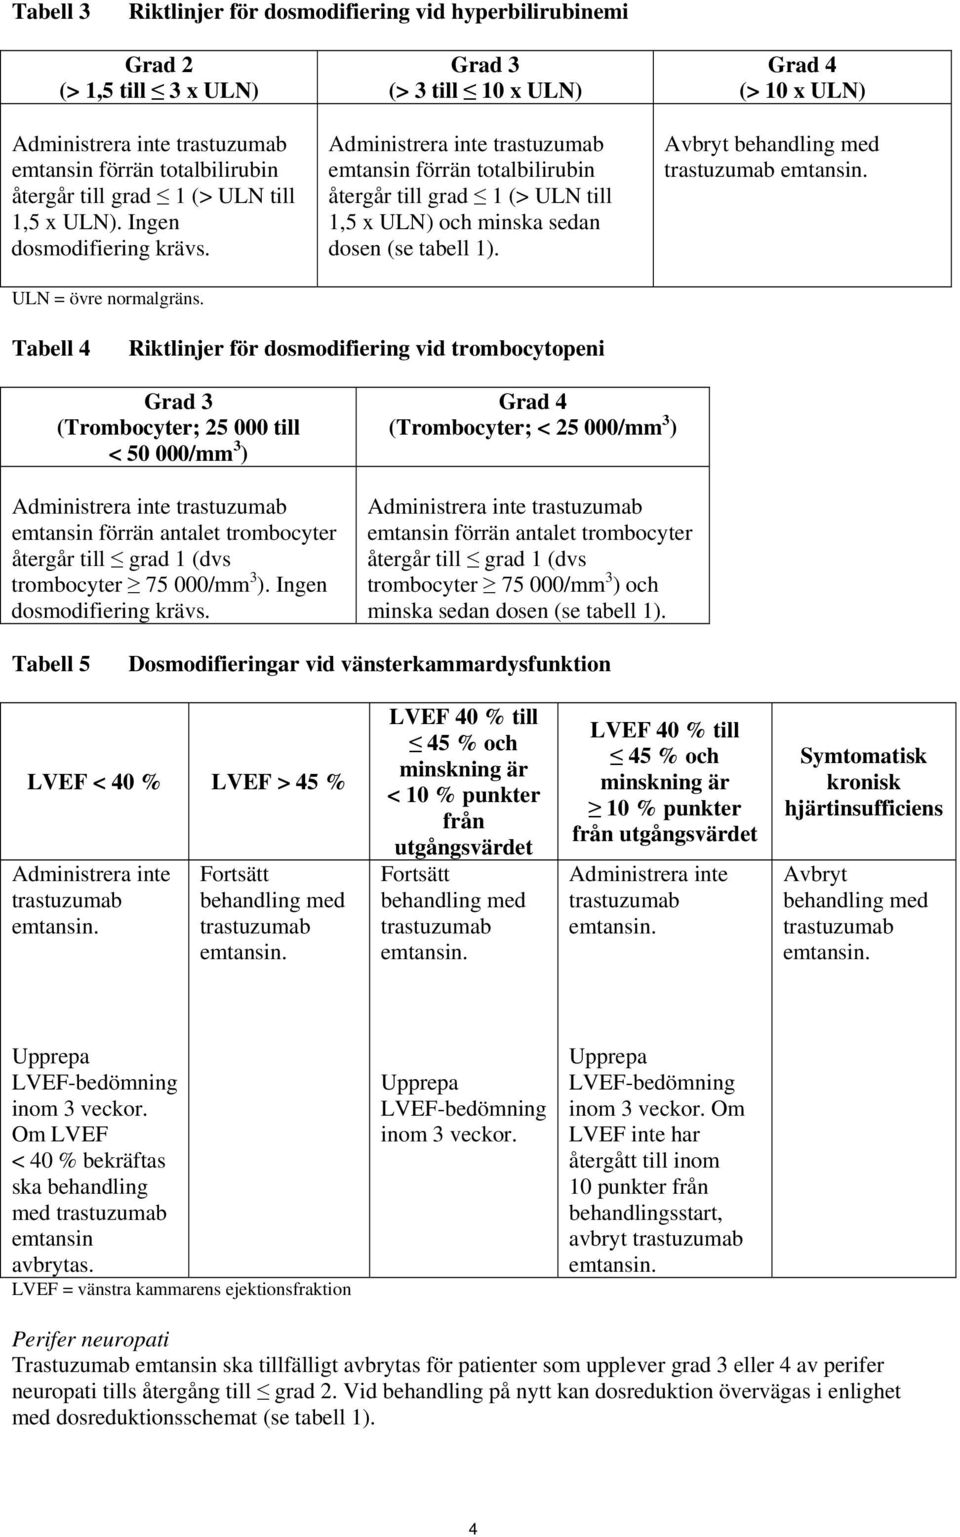 Grad 3 (> 3 till 10 x ULN) Administrera inte trastuzumab emtansin förrän totalbilirubin återgår till grad 1 (> ULN till 1,5 x ULN) och minska sedan dosen (se tabell 1).